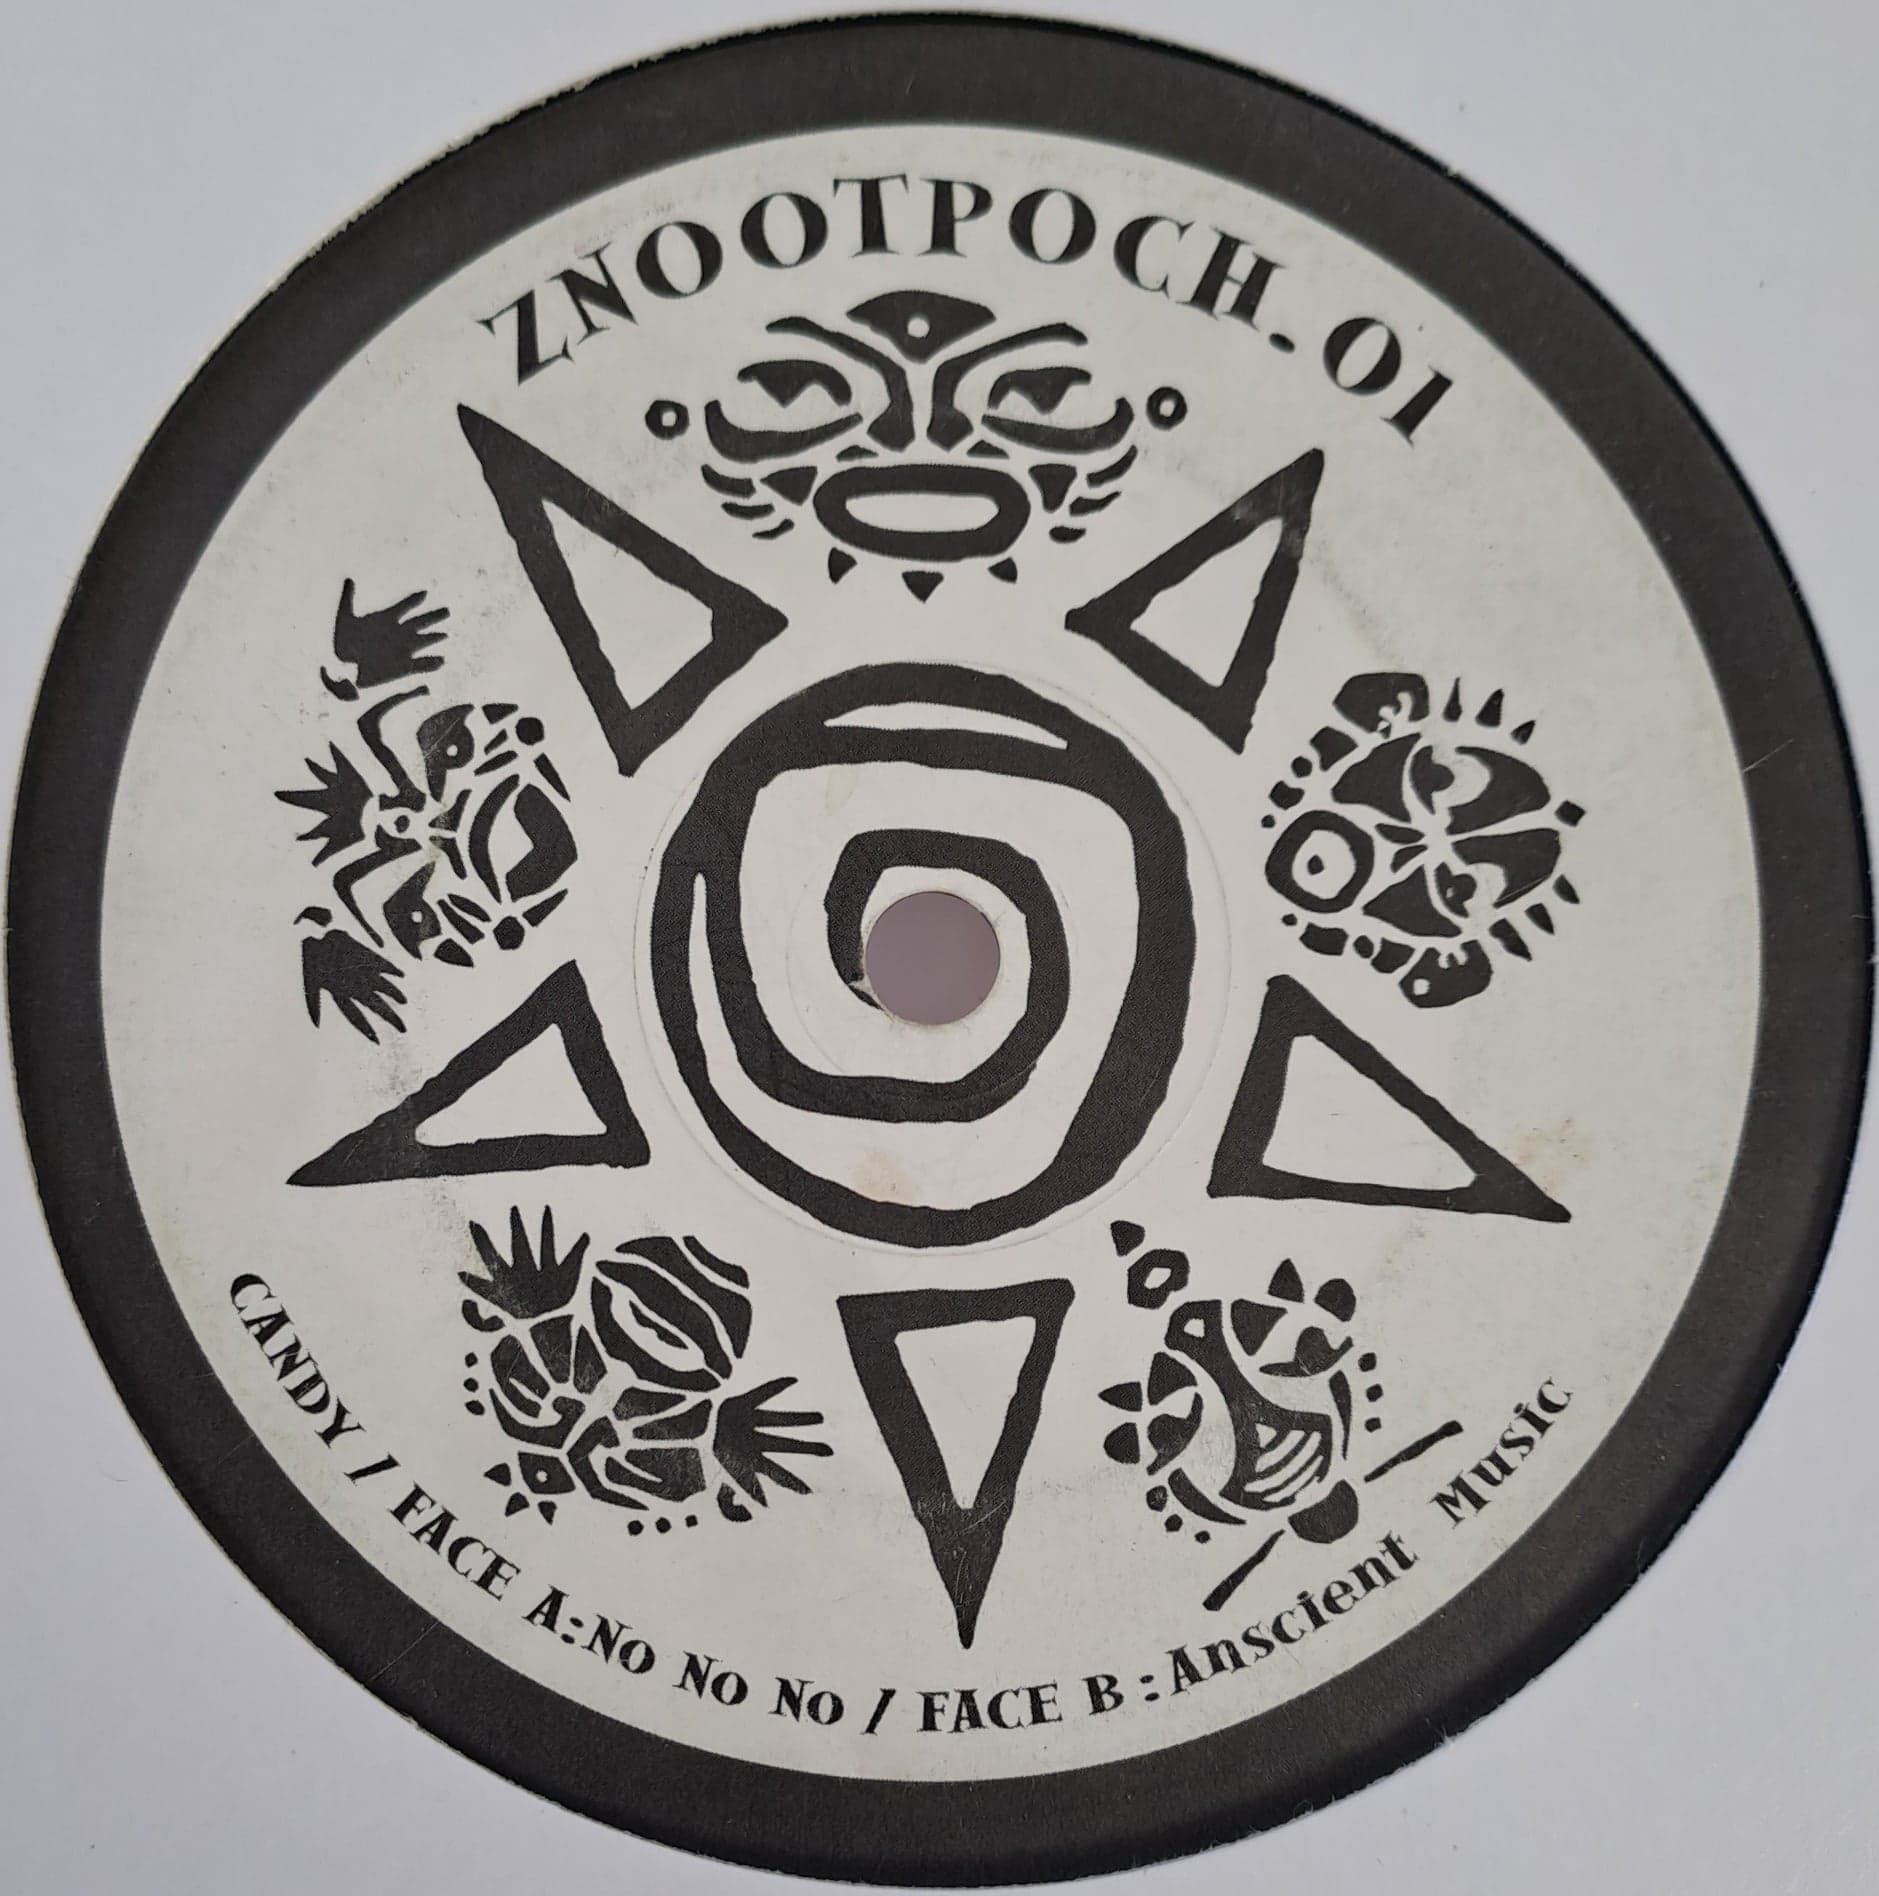 ZnootPoch 01 - vinyle Drum & Bass